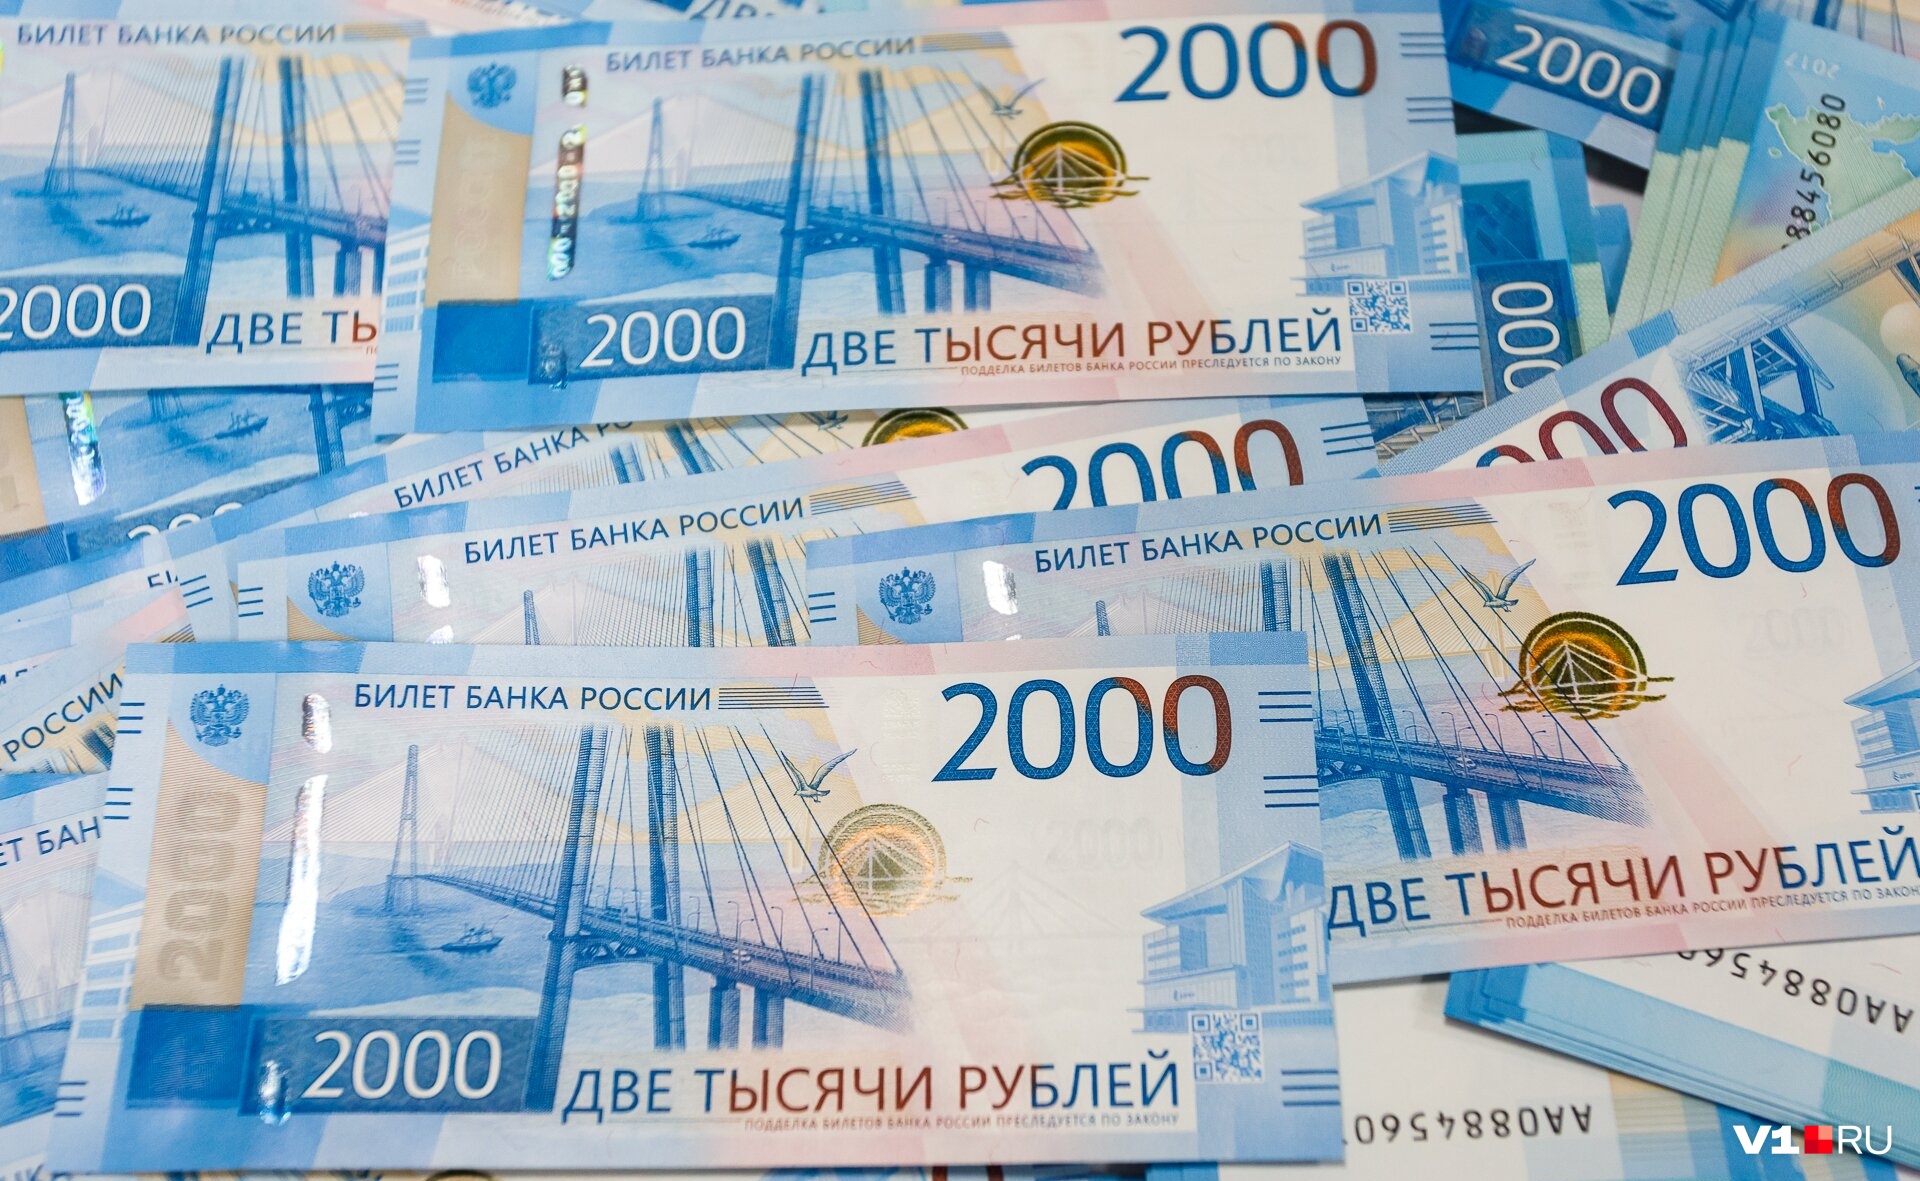 Производство 2000 руб. Деньги 2000 рублей. Две тысячи рублей. Банкнота 2000 руб. 2 Тысячи рублей.